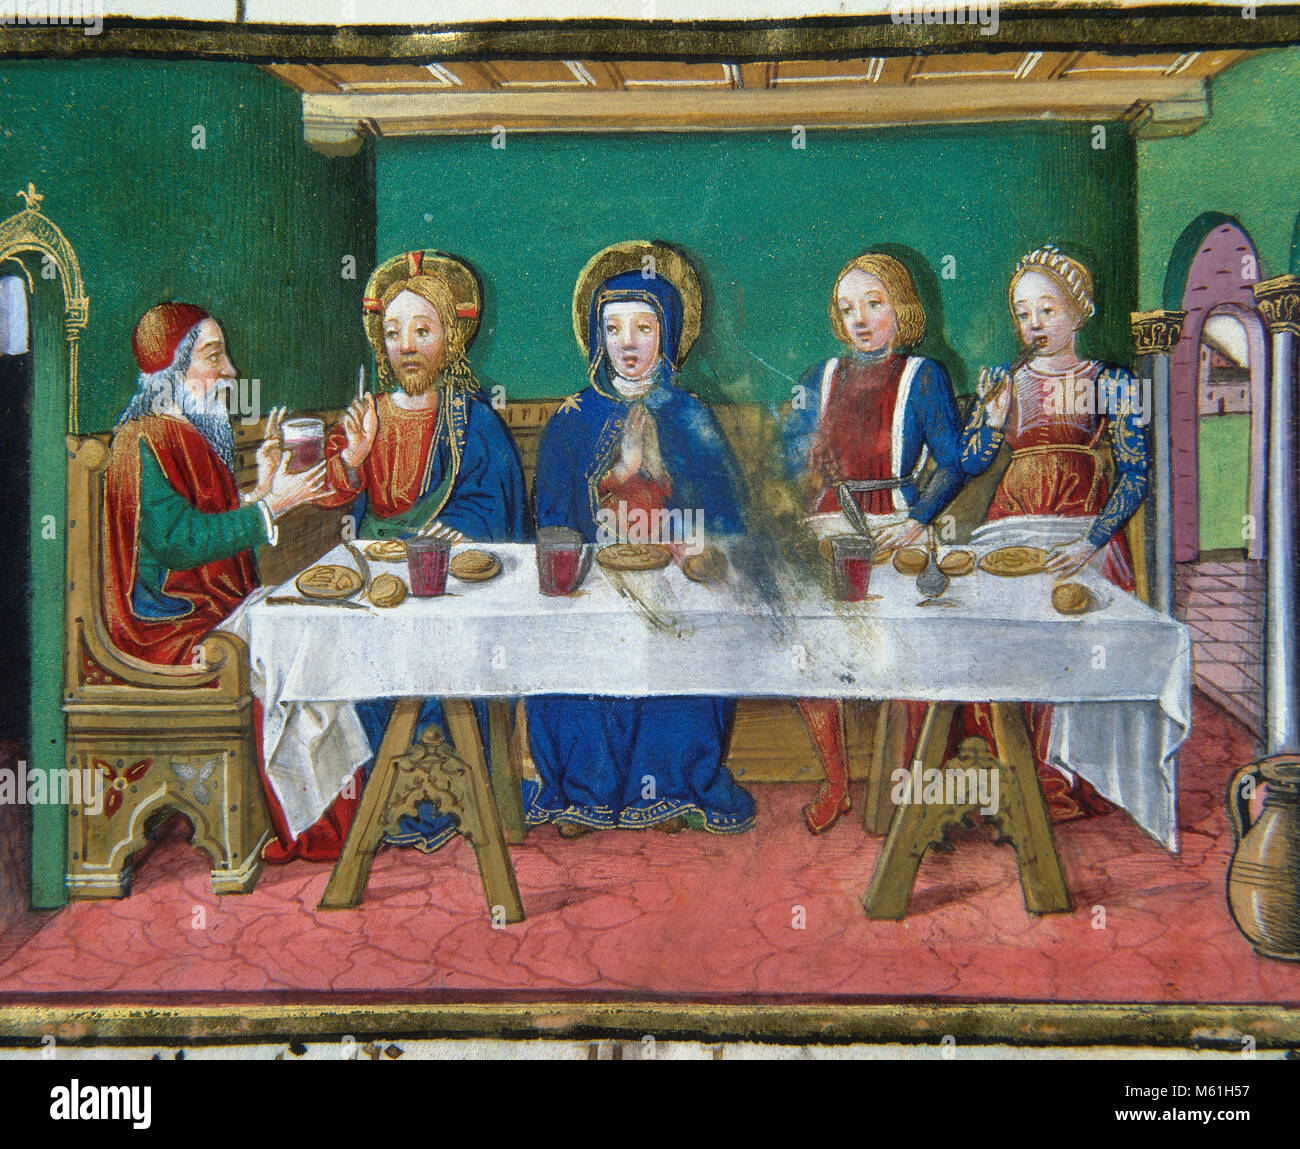 Le Nozze di Cana. La trasformazione di acqua in vino alle nozze di Cana è  il primo miracolo attribuito a Gesù nel Vangelo di Giovanni. Codex di  Predis, 1476. Biblioteca Reale. Torino.